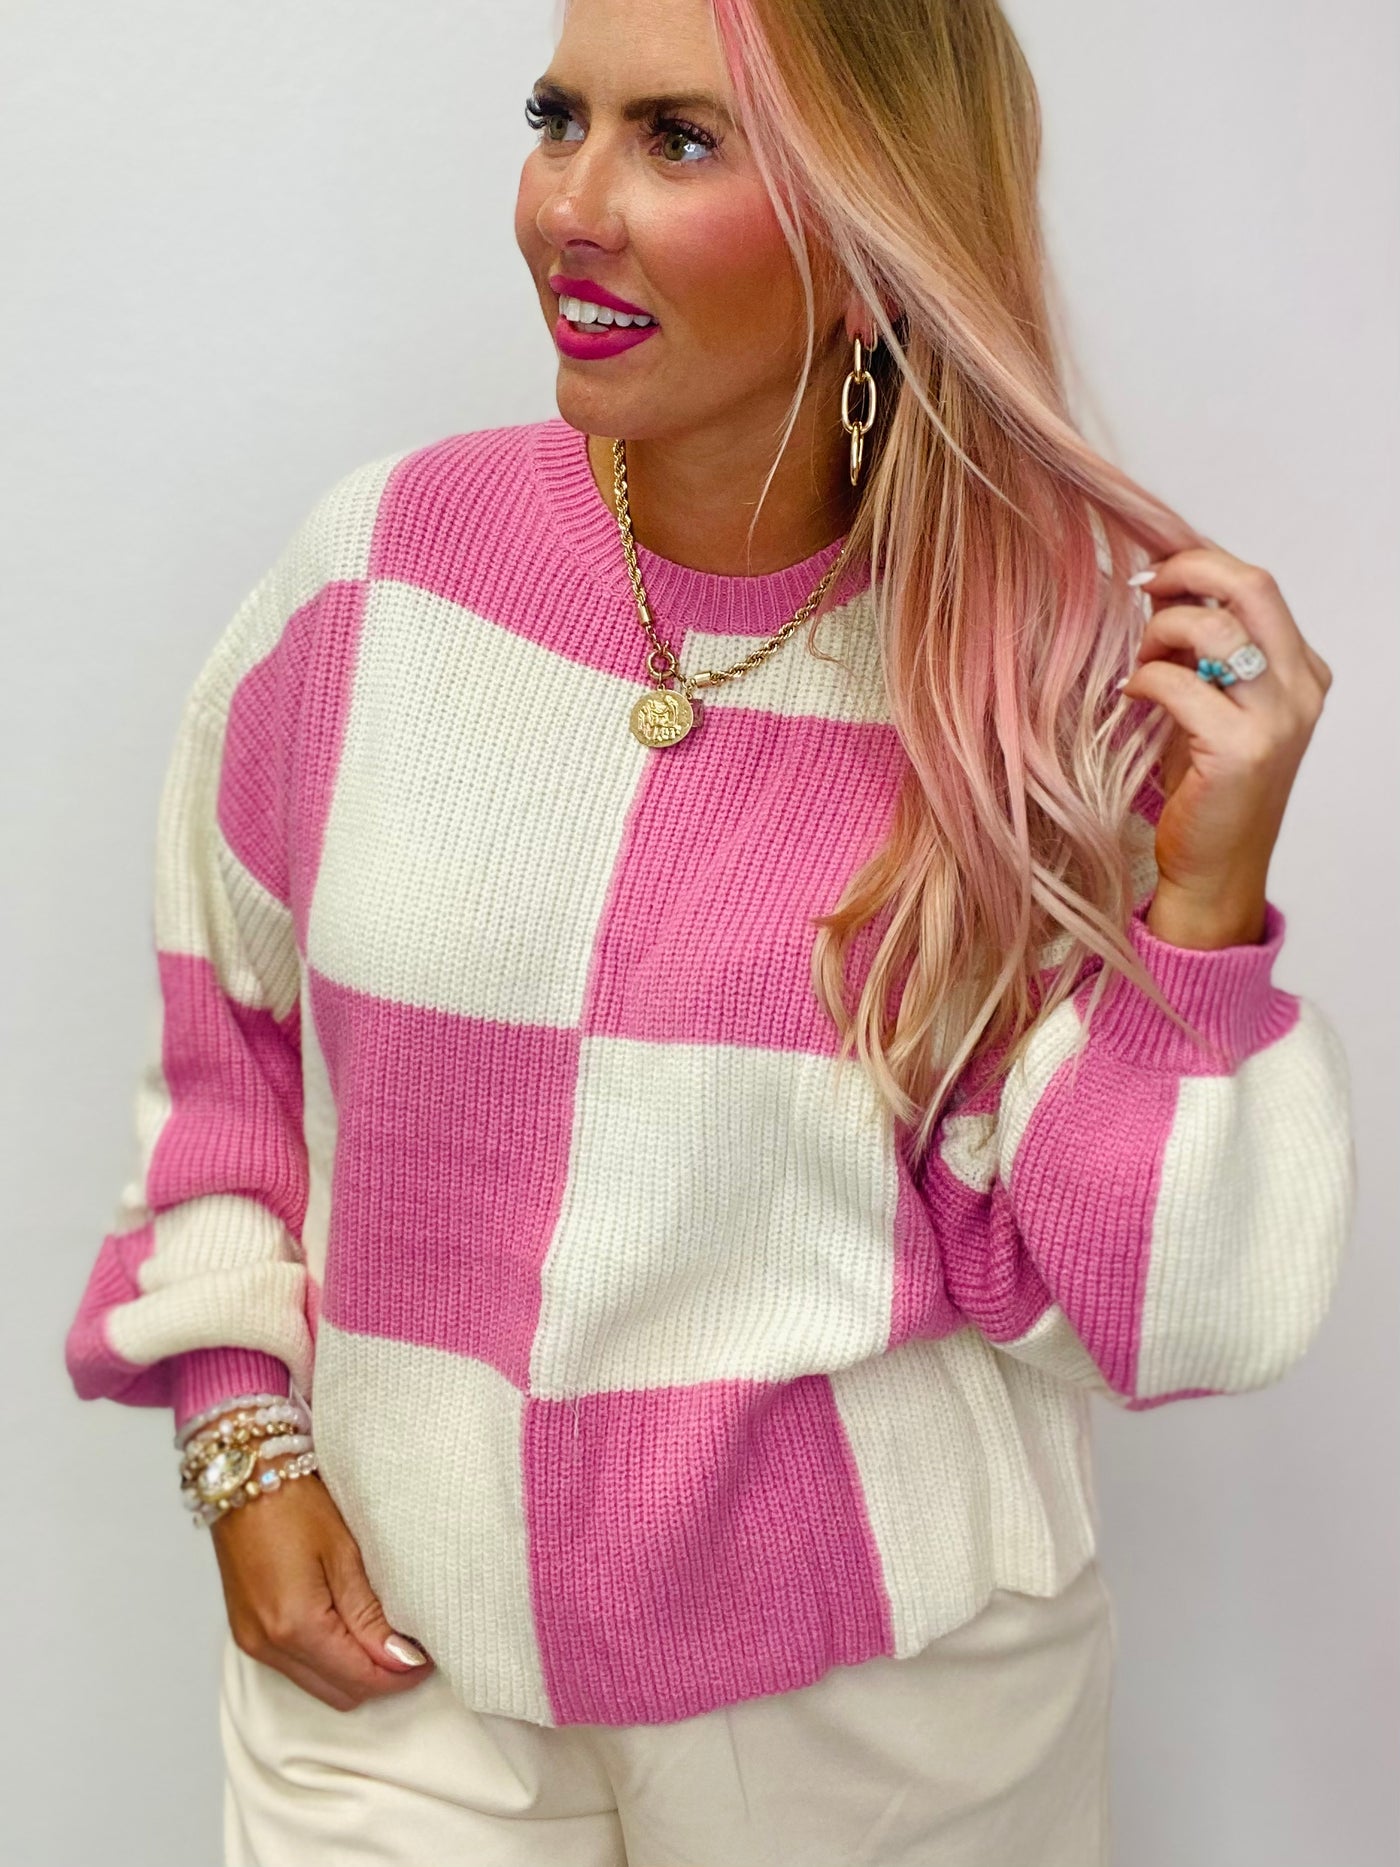 The Vana Checkered Sweater